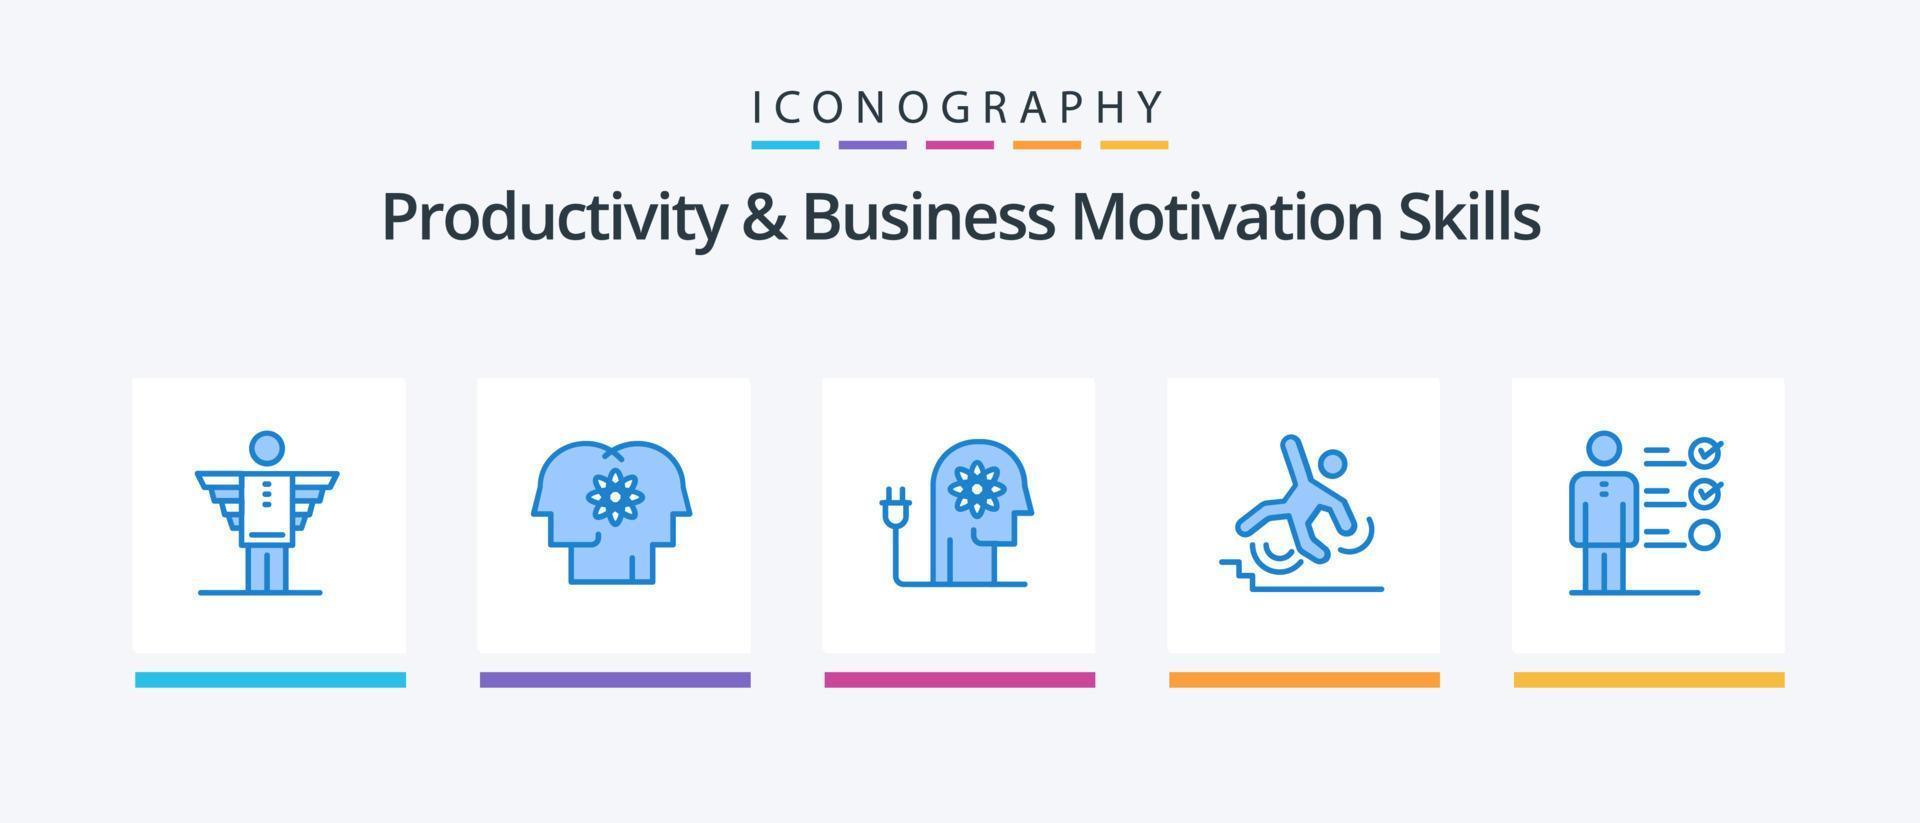 productividad y habilidades de motivación empresarial paquete de iconos azul 5 que incluye errores. negocio. gestión. mente. impulsar diseño de iconos creativos vector